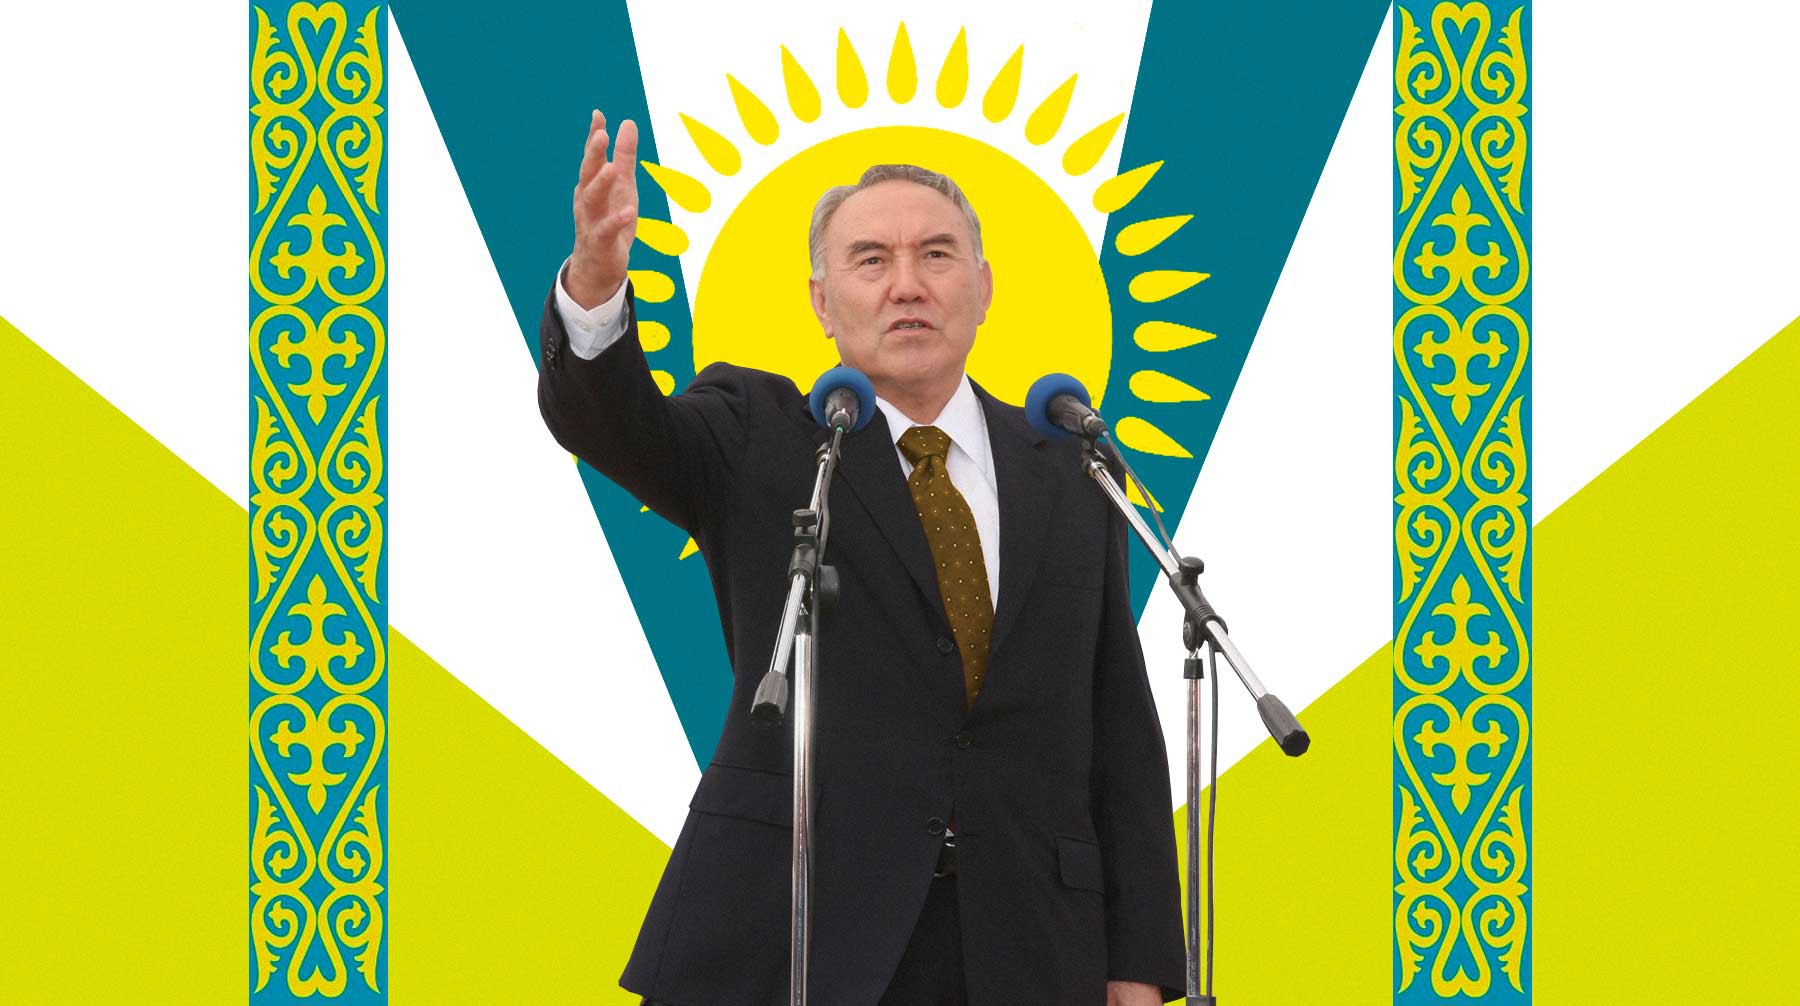 Dailystorm - «После отставки Назарбаева президентом Казахстана будет Назарбаев». Что стоит за рокировкой власти в республике?